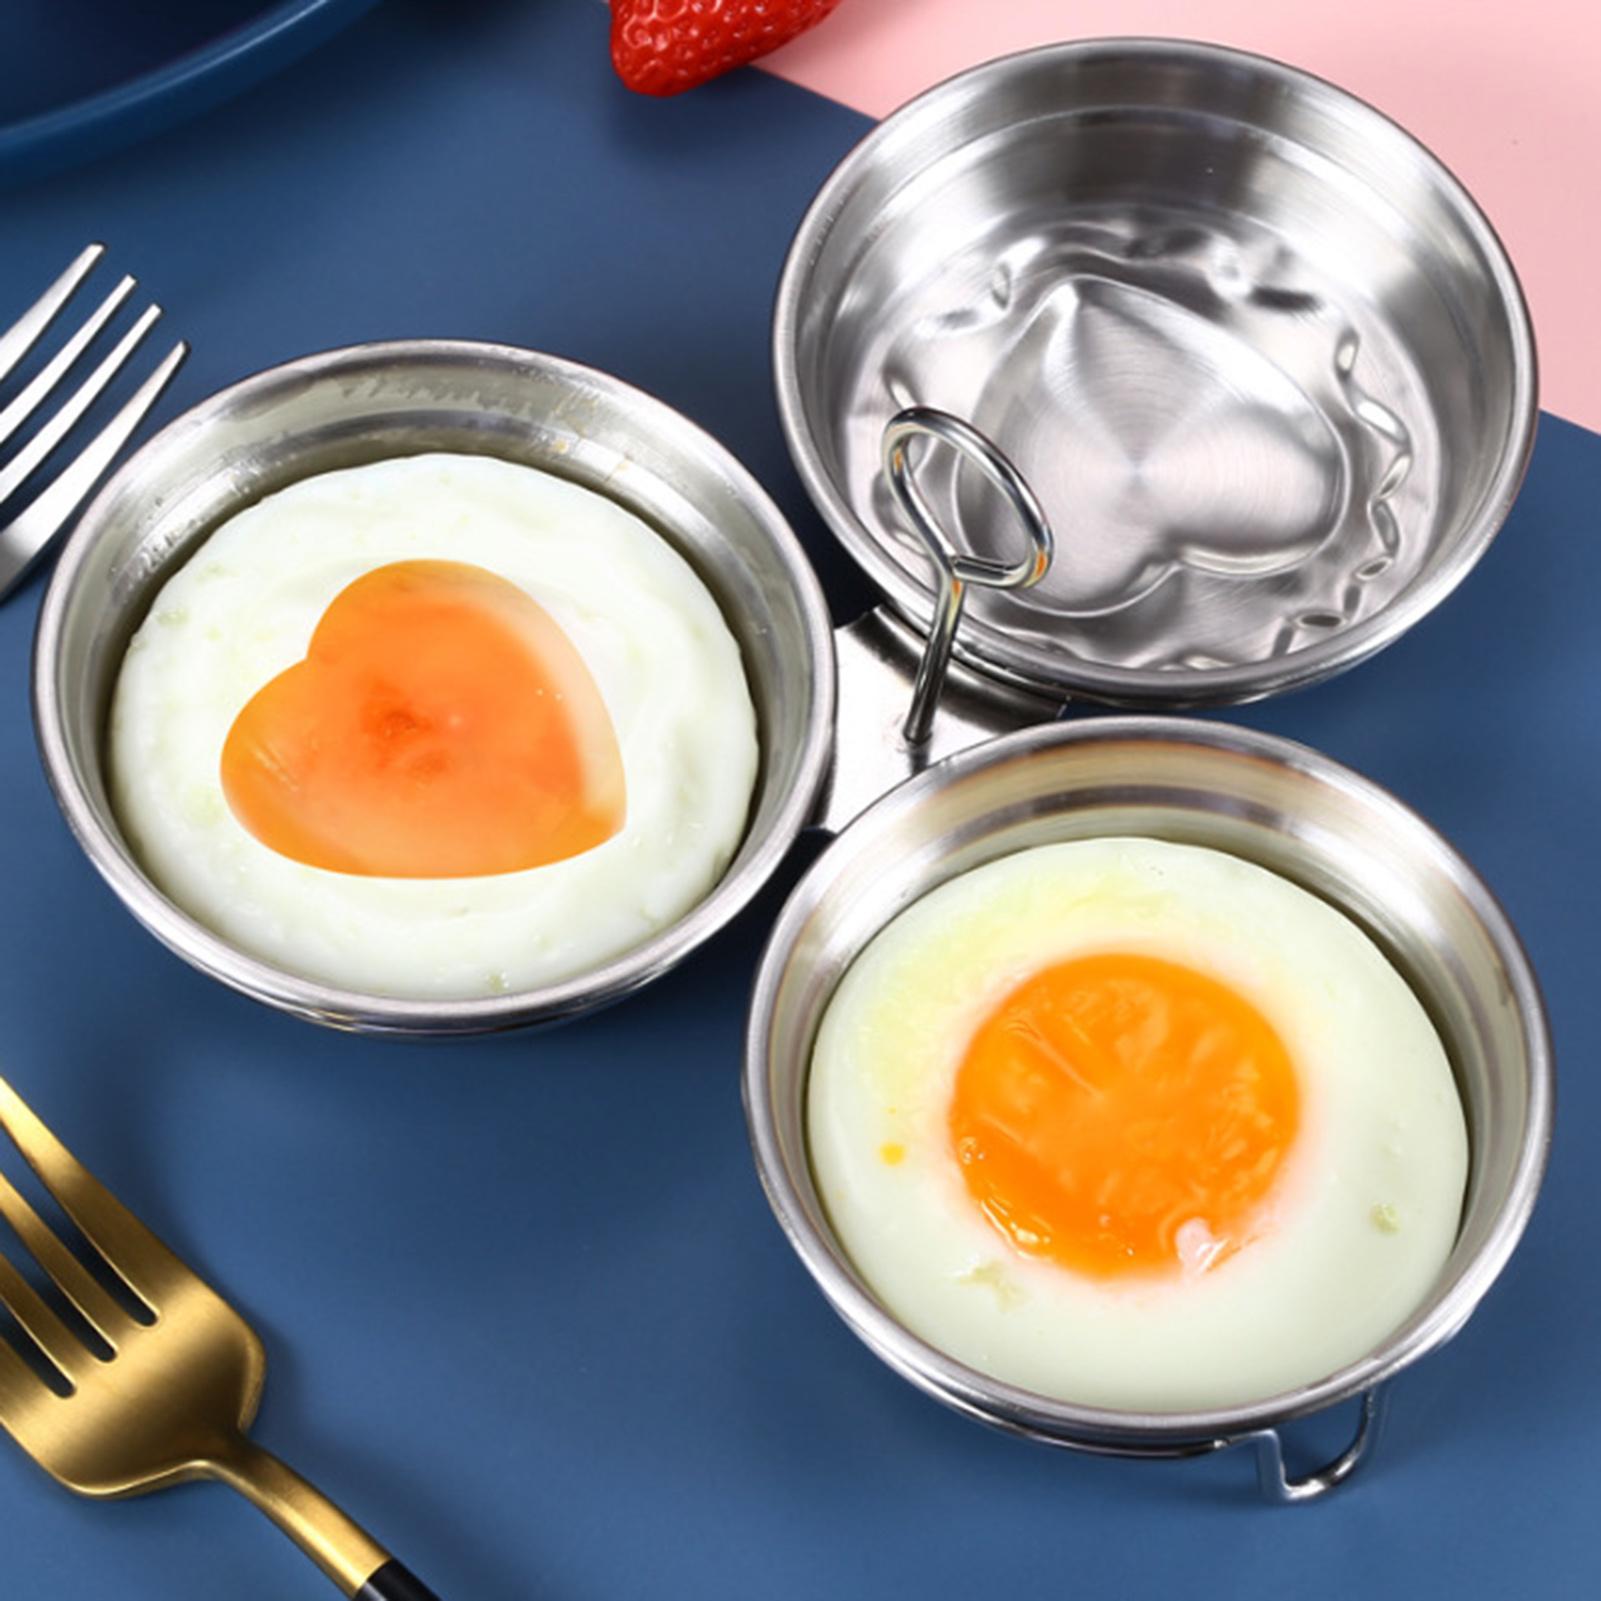 Mini Hart Zon Vorm Multifunctionele Roestvrij Staal Anti-aanbak Eierkoker Ontbijt Bakvorm Levert